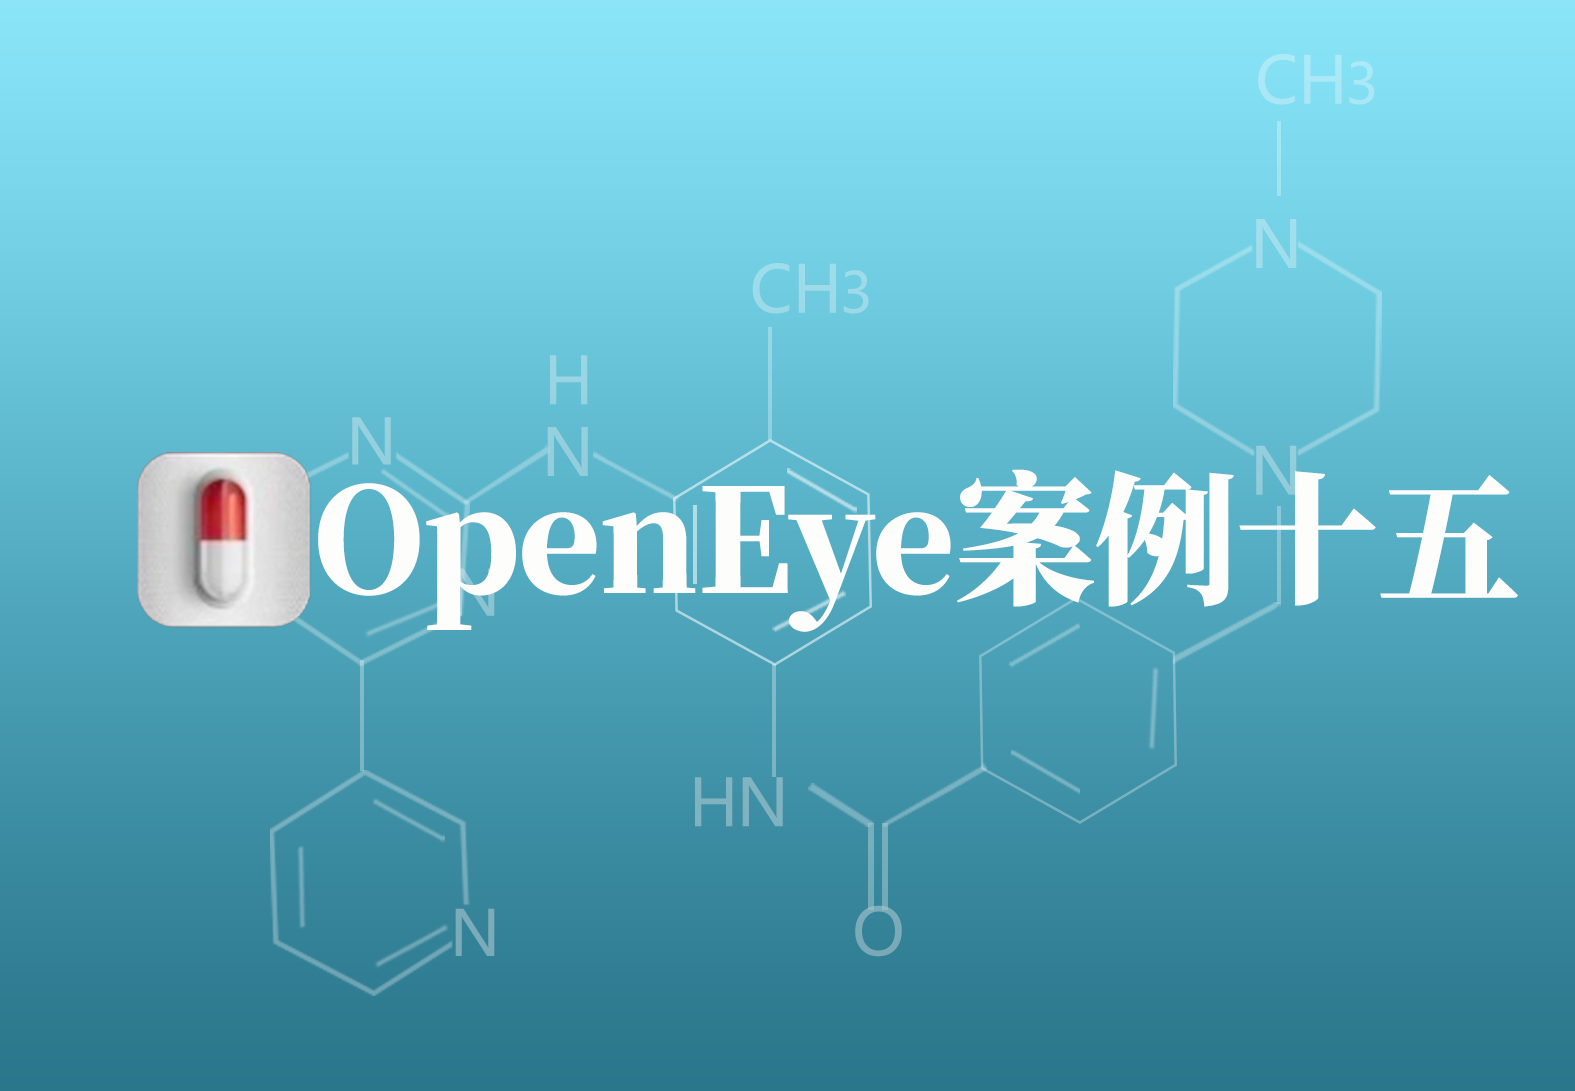 OpenEye应用案例十五：基于虚拟筛选方法发现新型抗炎药